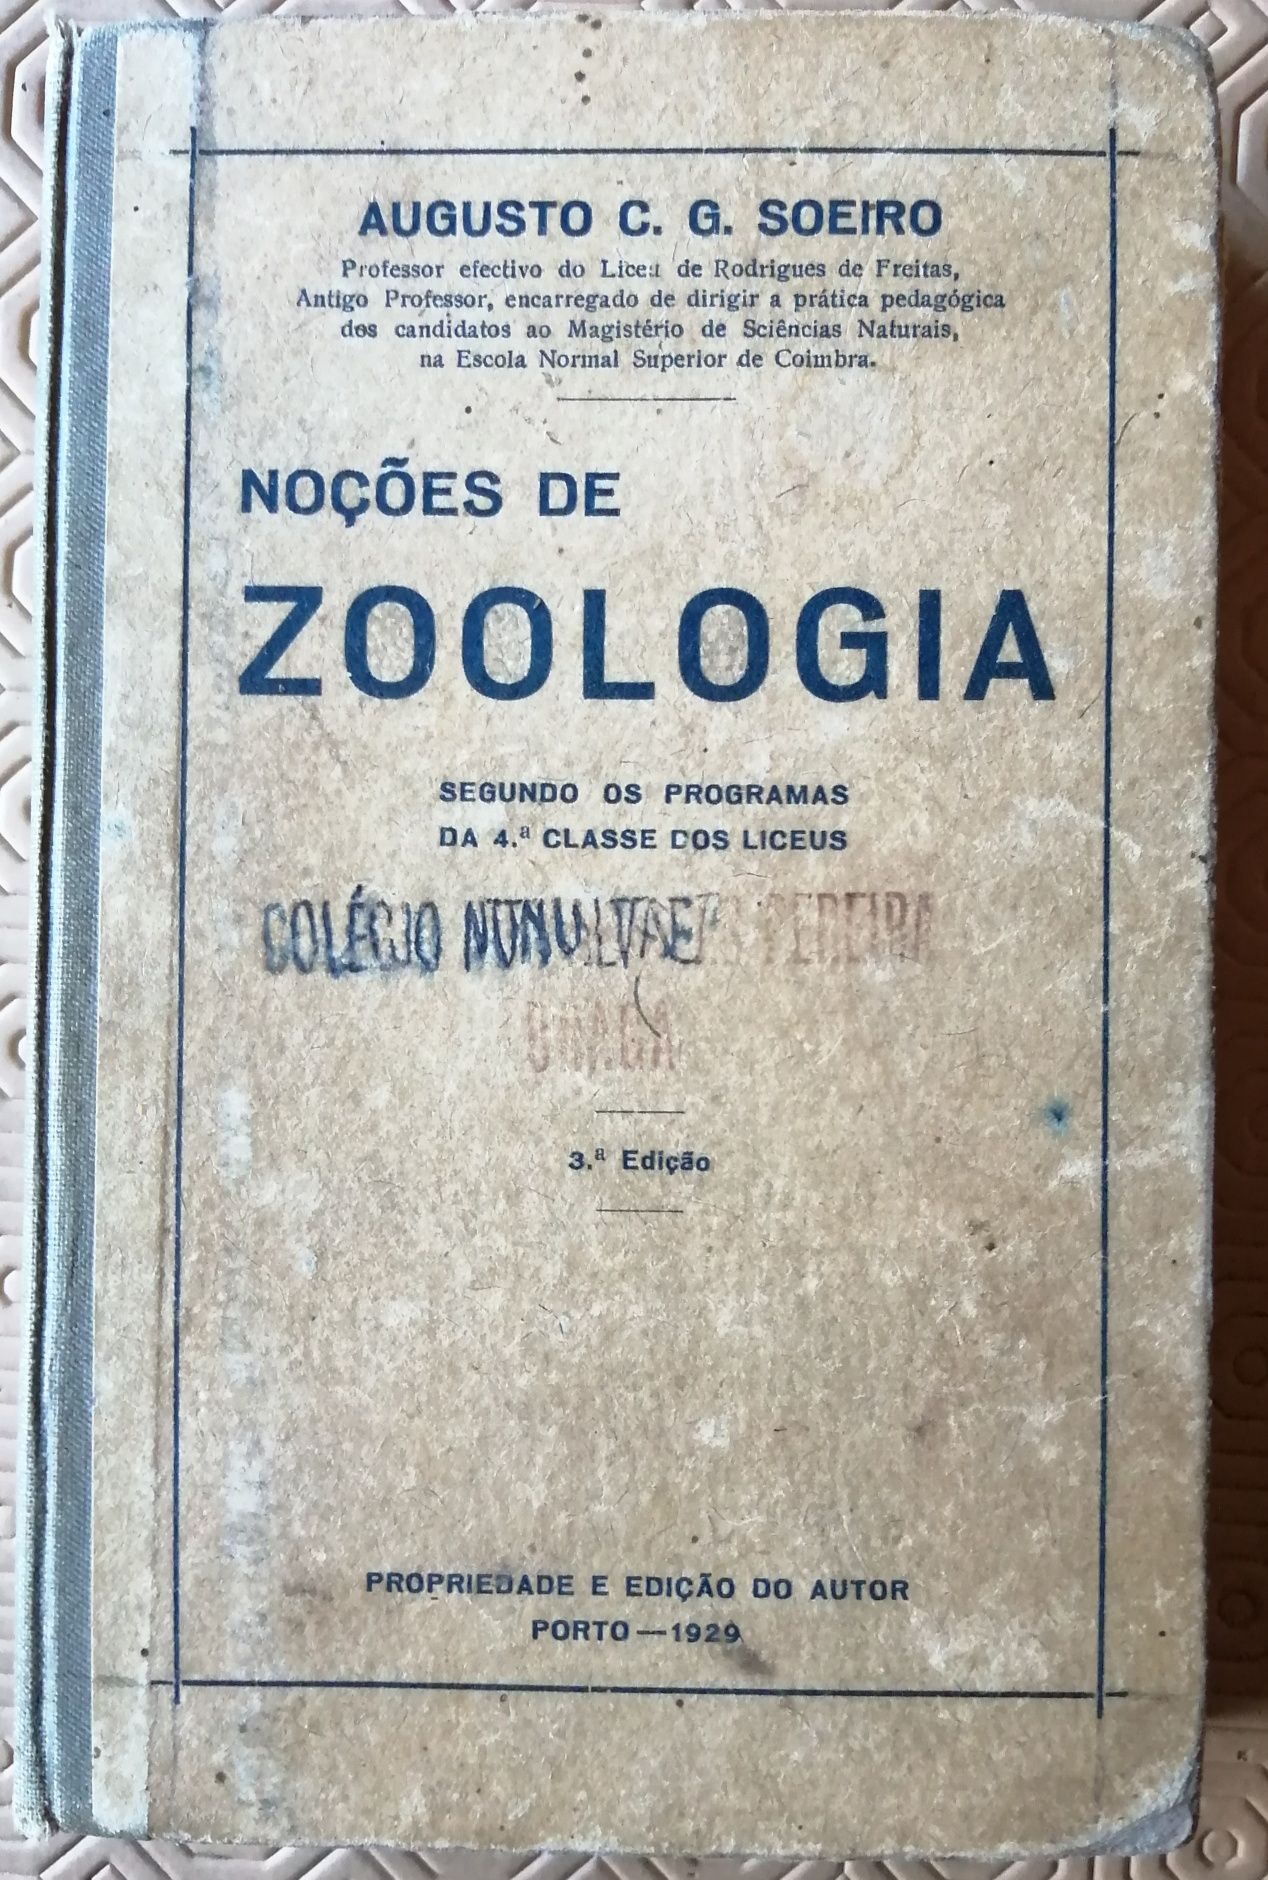 Noçôes de ZOOLOGIA
3^Edição - 1929